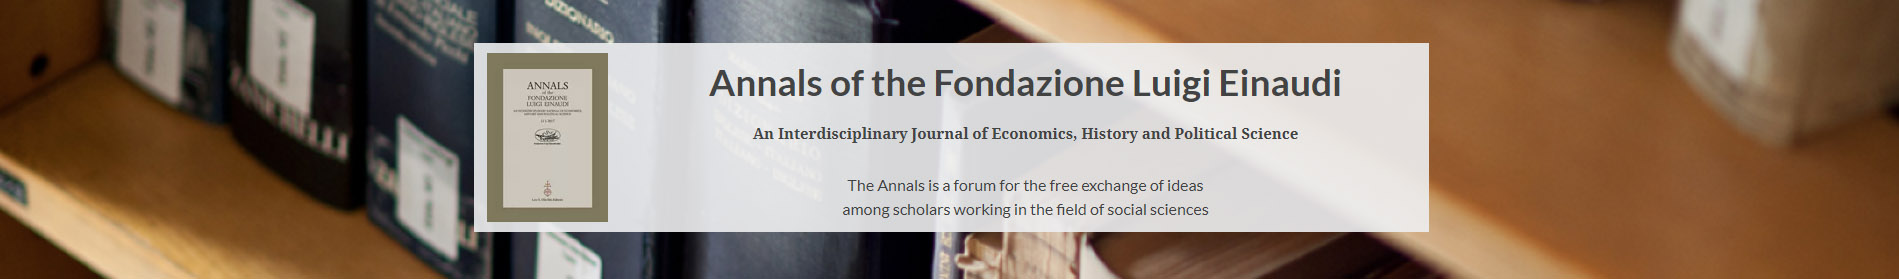 sito web Annals of the Fondazione Luigi Einaudi